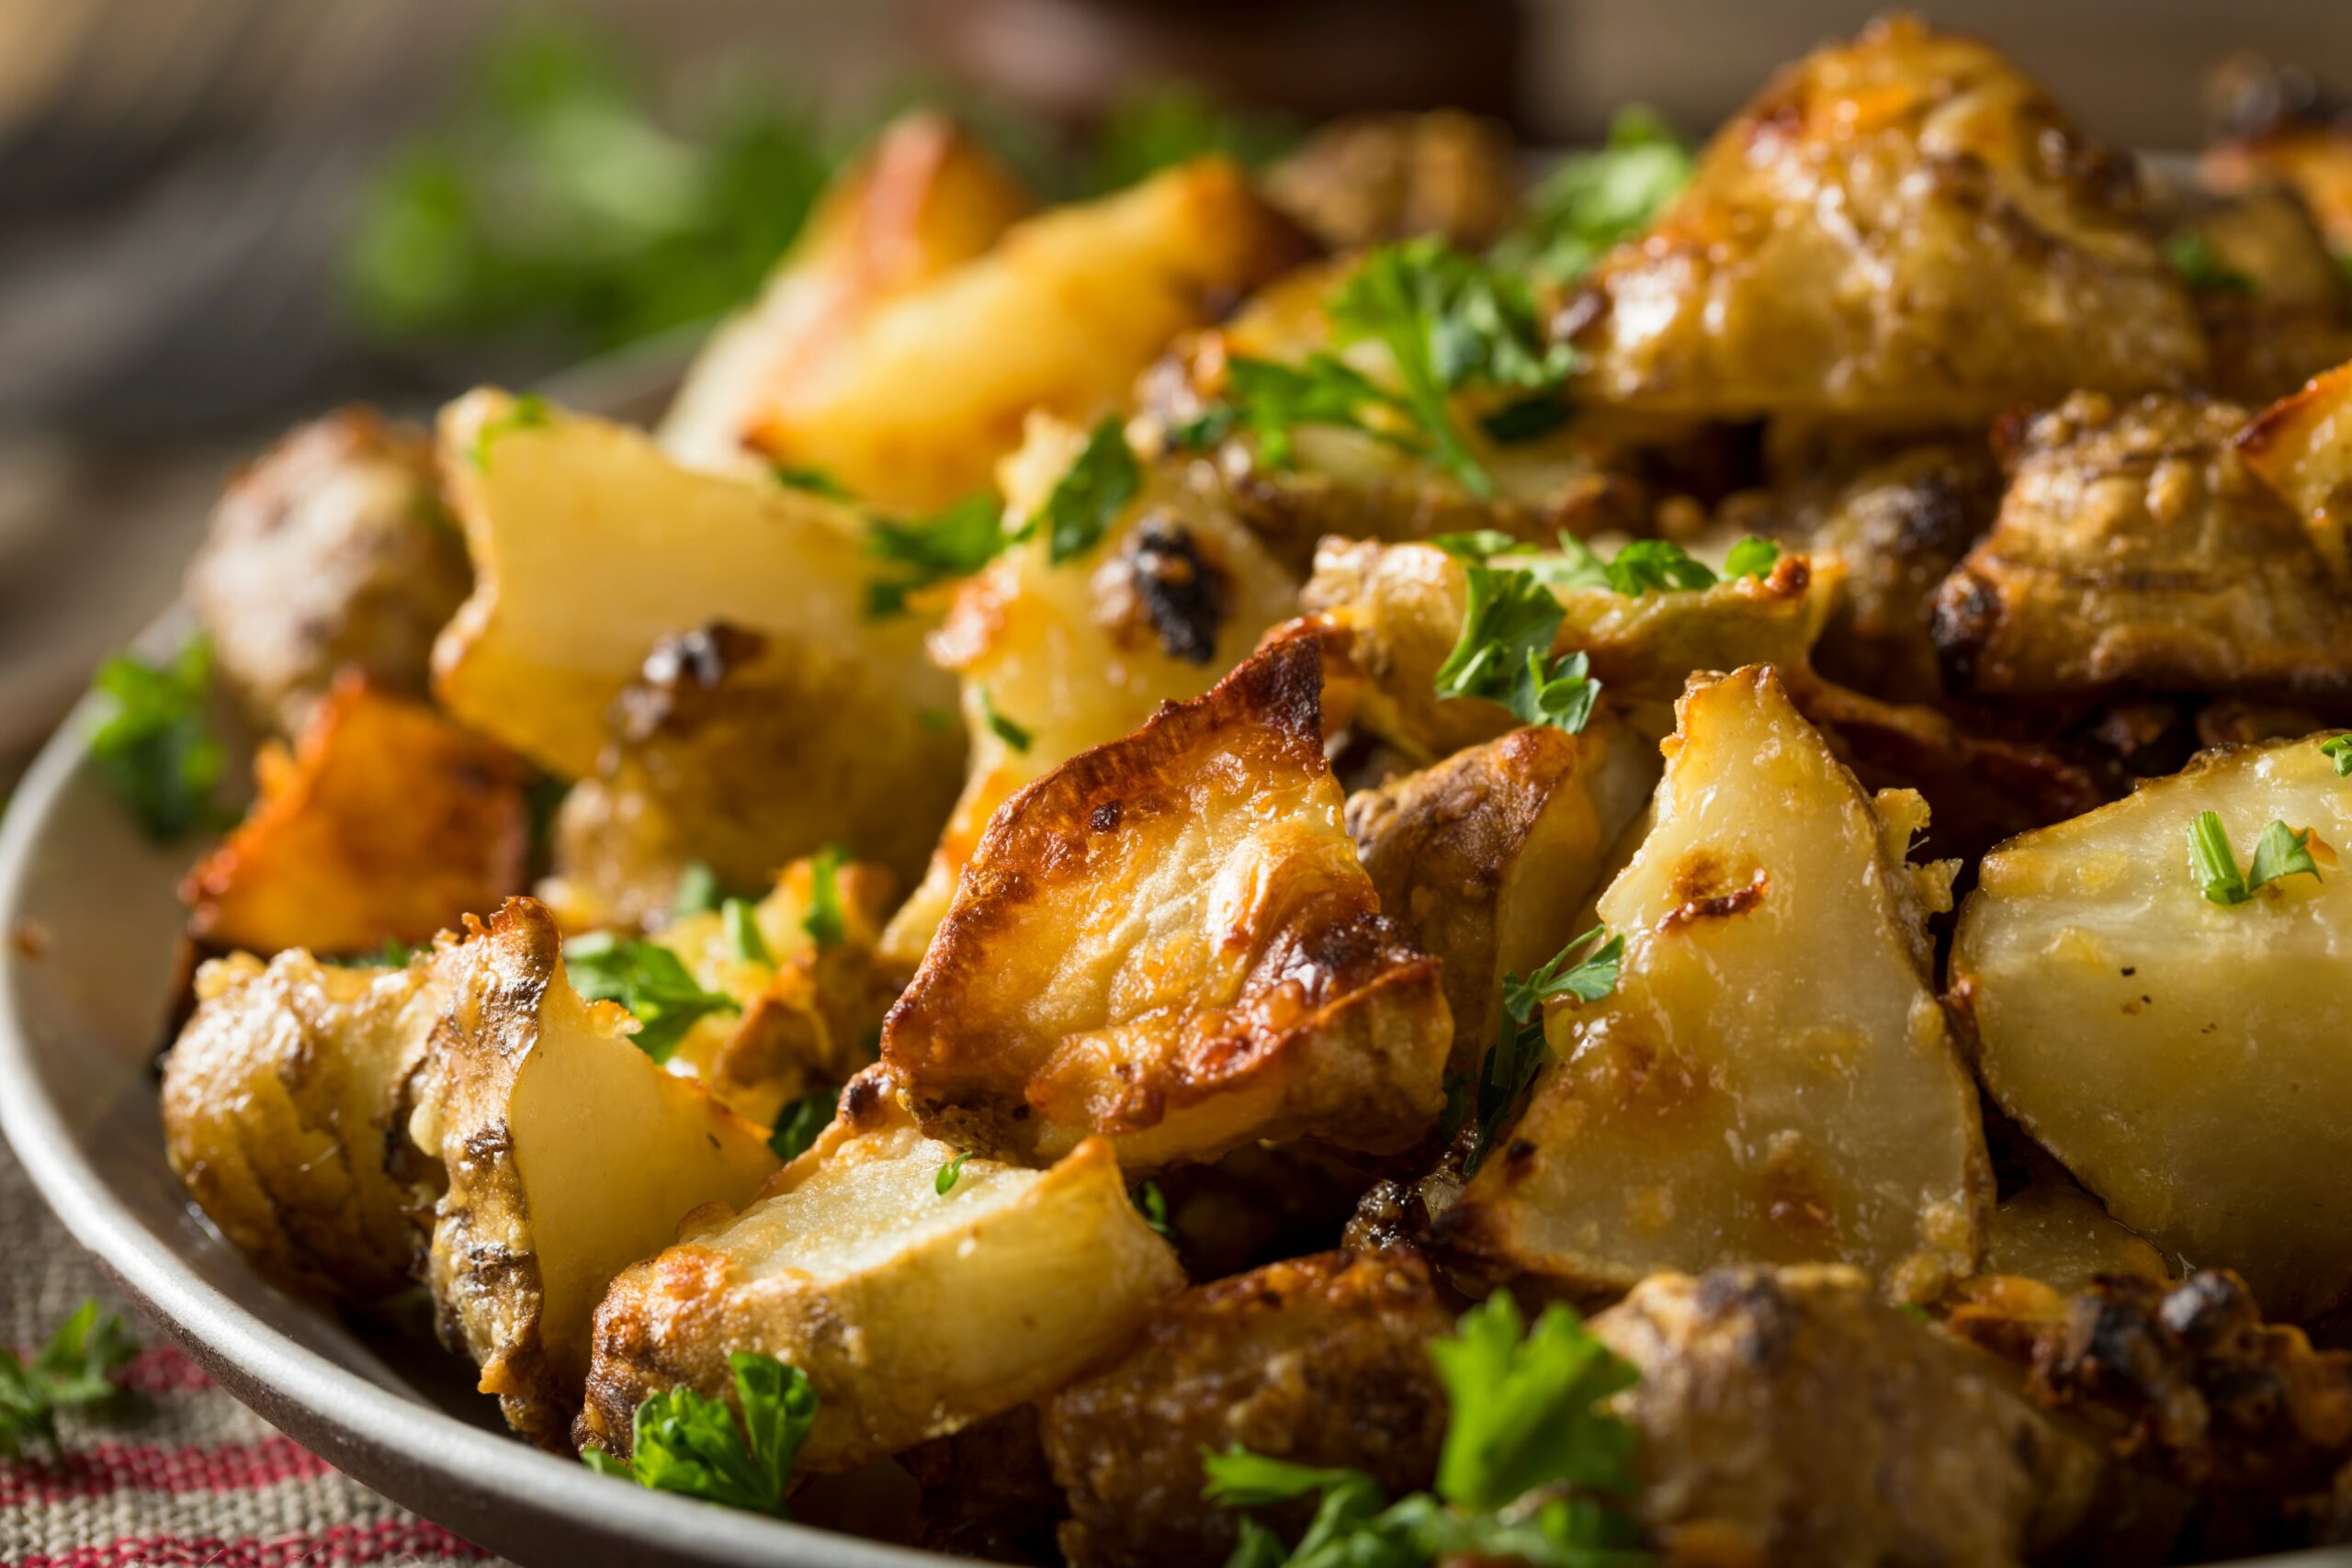 Carciofi e patate al forno: un contorno azzeccatissimo e facile, facile